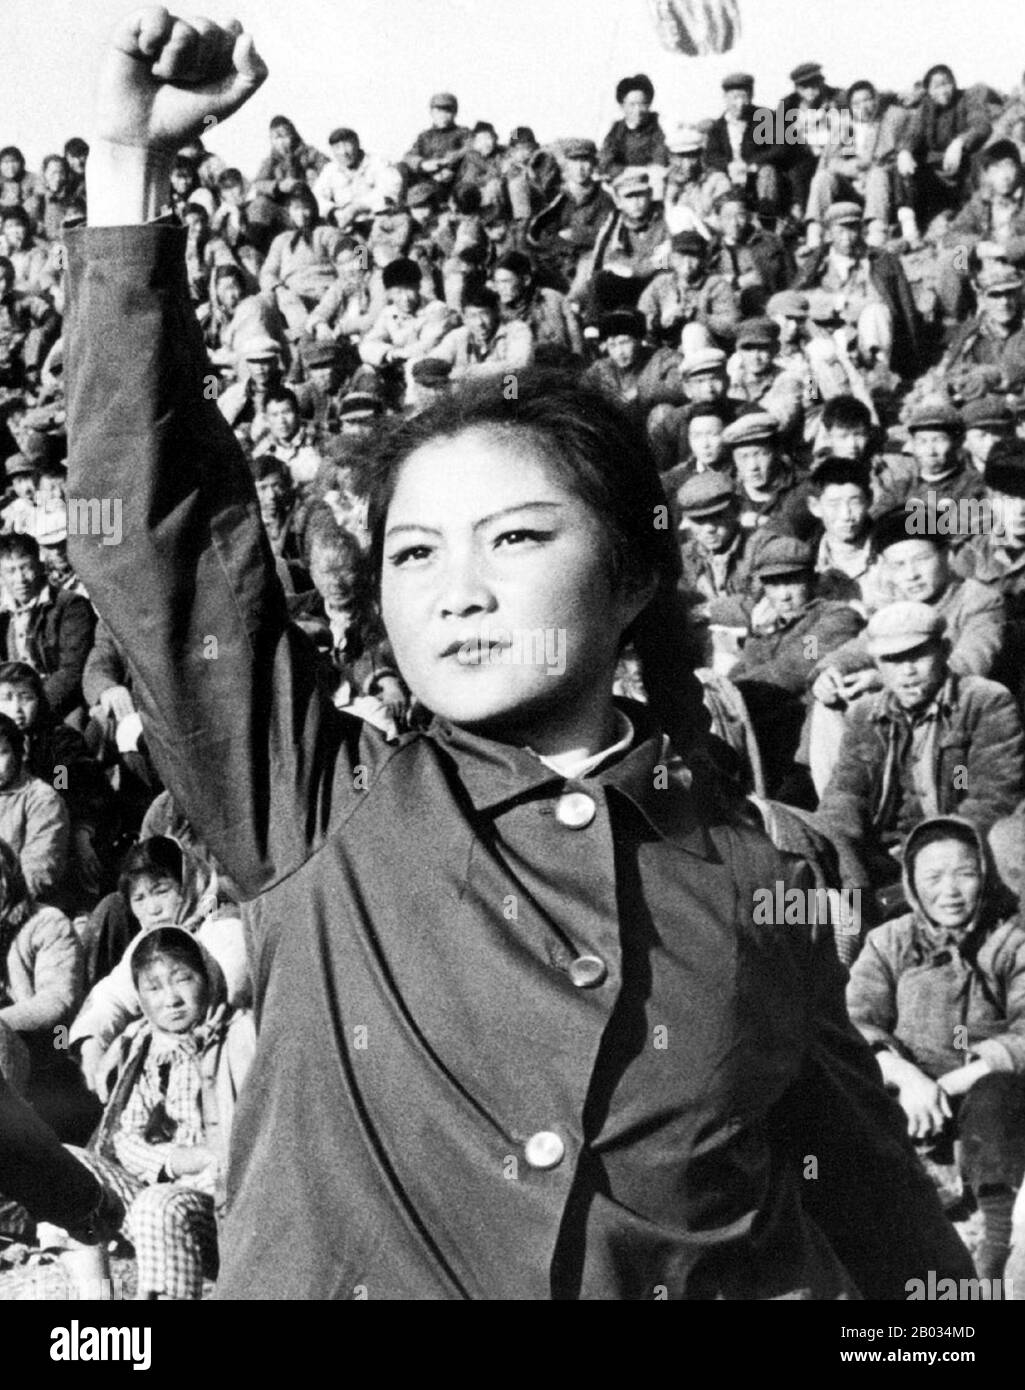 Die Große Proletarische Kulturrevolution, allgemein als Kulturrevolution bekannt, war eine gesellschaftspolitische Bewegung, die von 1966 bis 1976 in der Volksrepublik China stattfand. Das von Mao Zedong, dem damaligen Vorsitzenden der Kommunistischen Partei Chinas, in Bewegung gesetzte Ziel war es, den Nationalsozialismus im Land durchzusetzen, indem es kapitalistische, traditionelle und kulturelle Elemente aus der chinesischen Gesellschaft herausnahm und die maoistische Rechtgläubigkeit innerhalb der Partei auferlegte. Die Kulturrevolution schädigte das Land wirtschaftlich und sozial in großem Maßstab. Millionen von Menschen wurden in der gewalttätigen Factional verfolgt Stockfoto